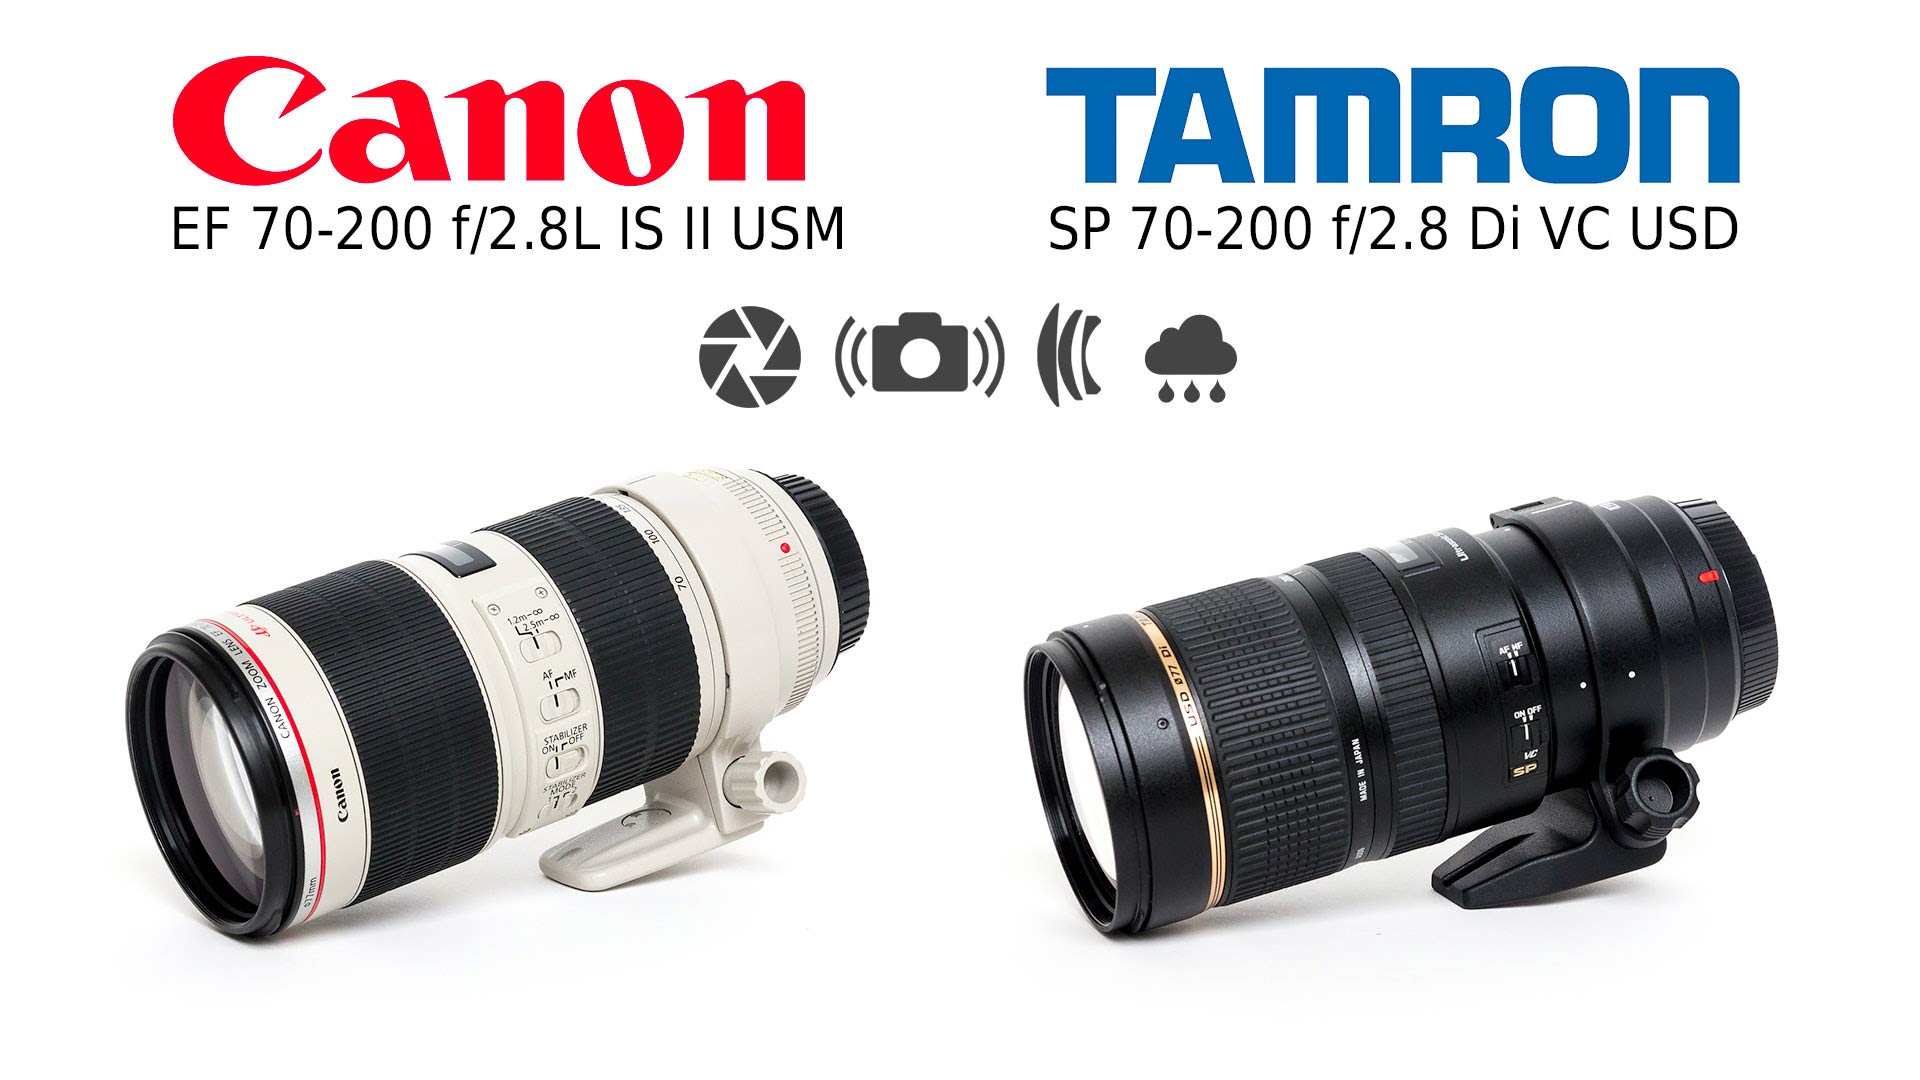 Lens Comparison: Tamron SP 70-200 f/2.8 Di VC USD vs Canon EF 70